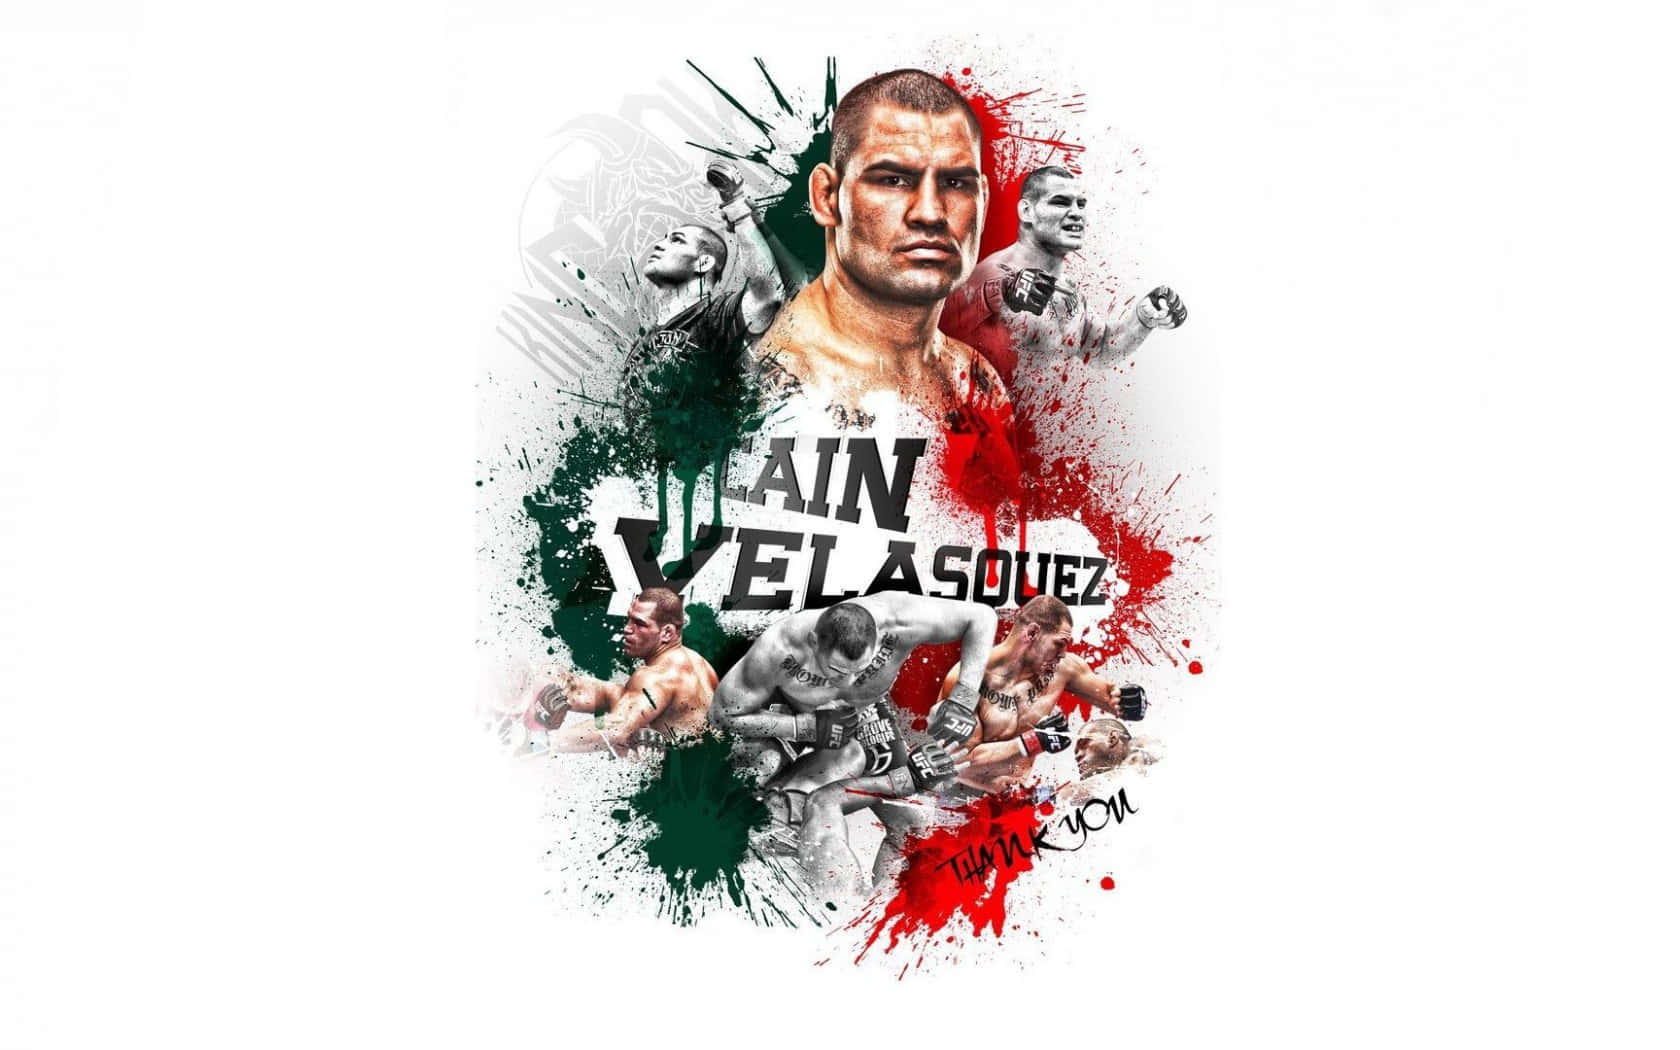 American Wrestler Cain Velasquez Digital Art Wallpaper